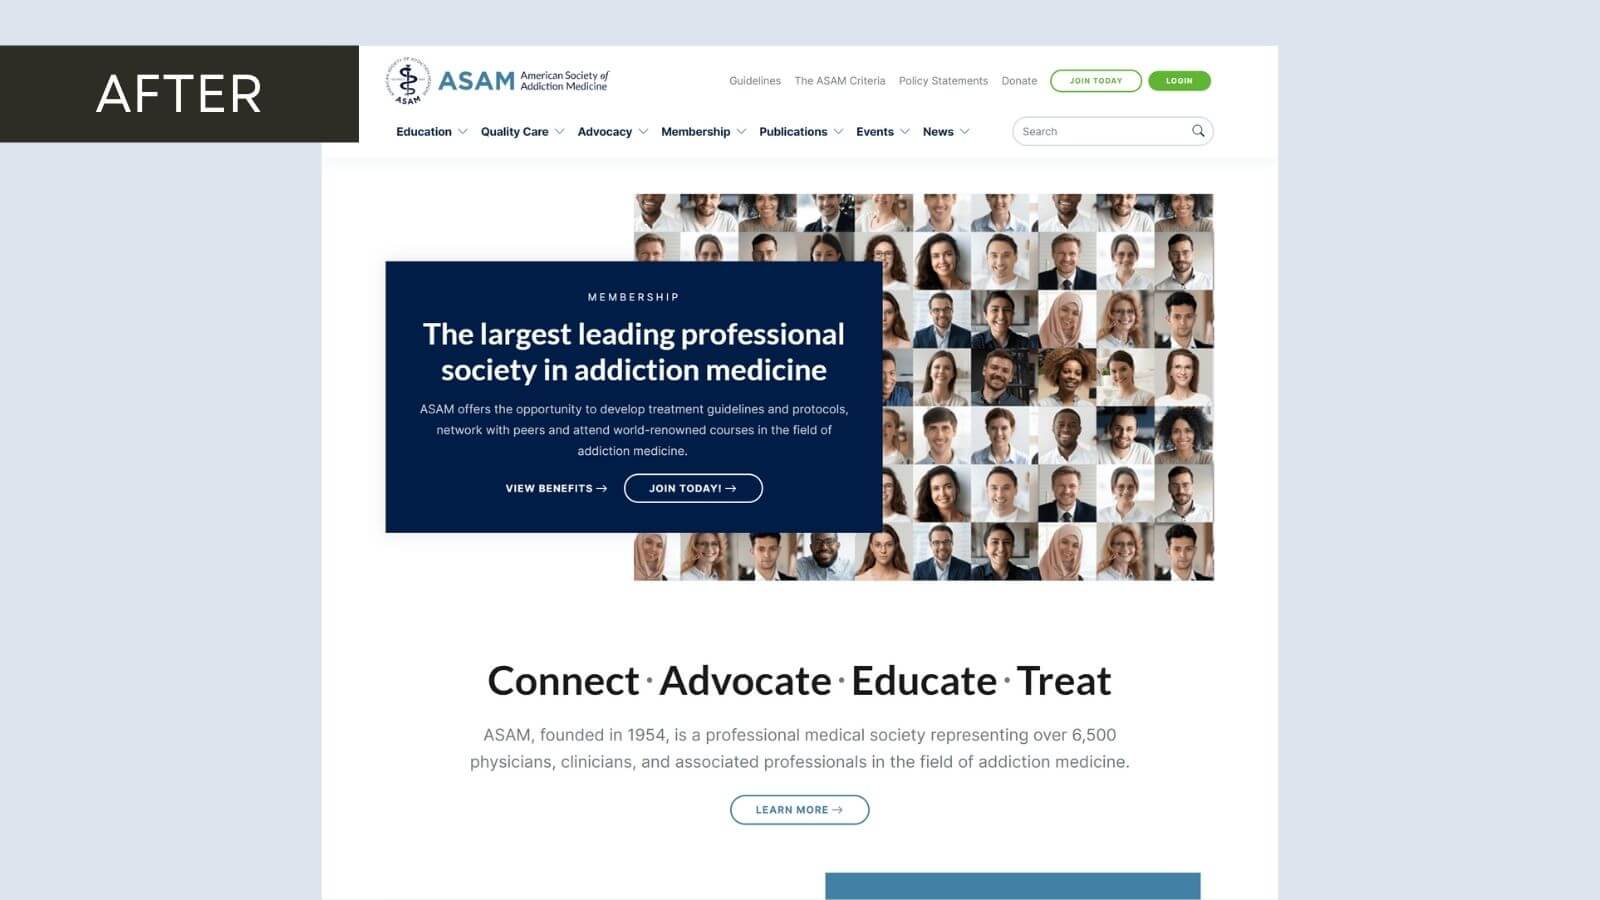 asam.org website after redesign